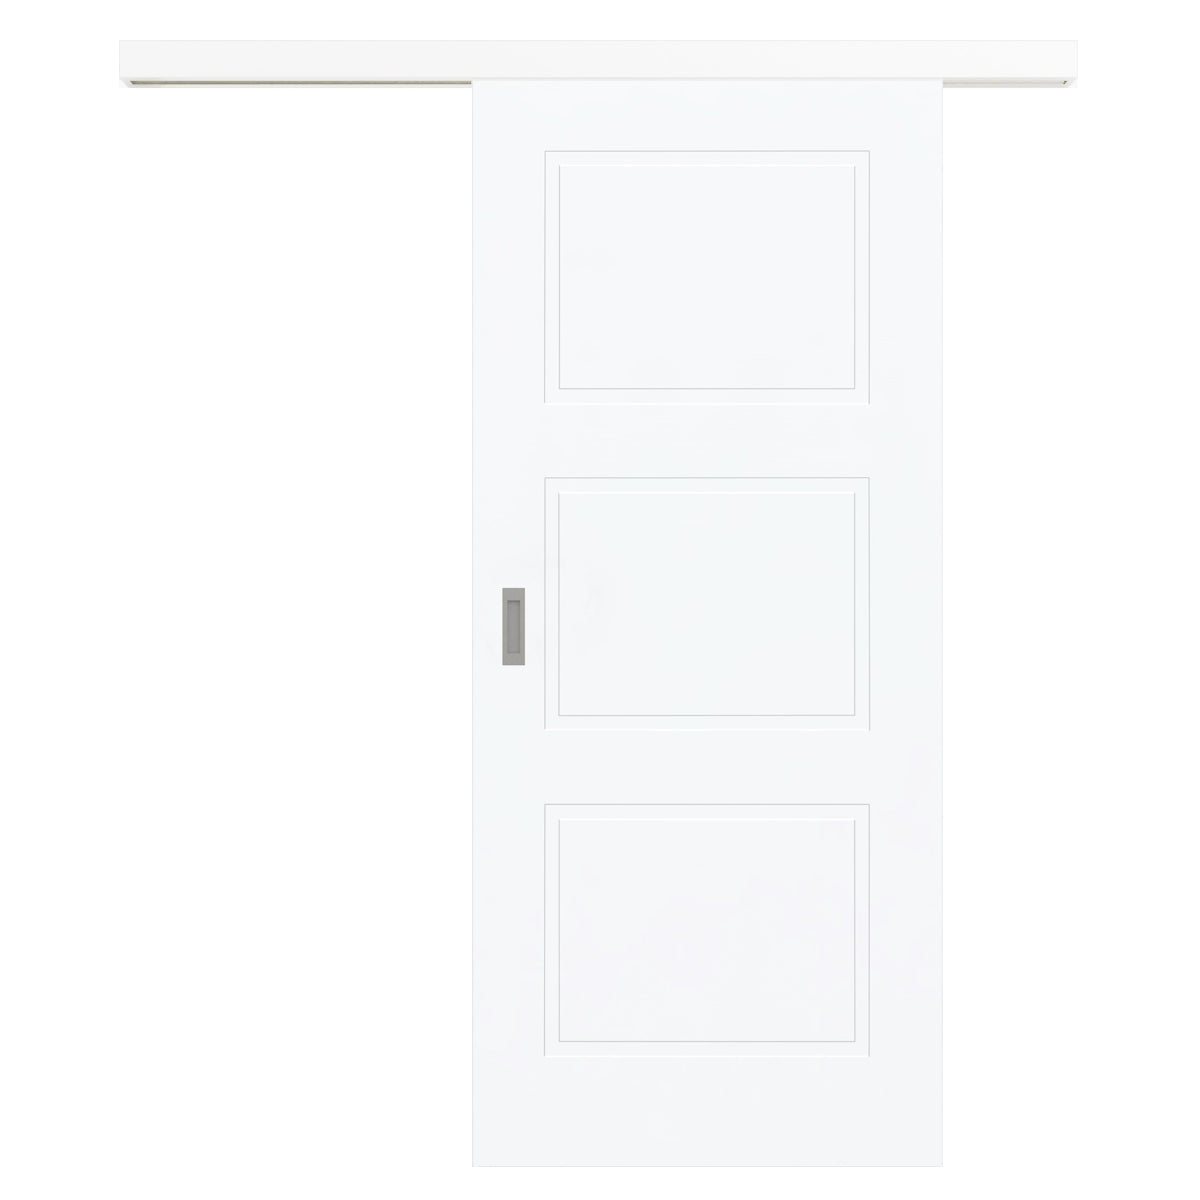 Schiebetür für Set mit weißem Laufkasten brillant-weiß Stiltür mit 3 Kassetten - Modell Stiltür M33